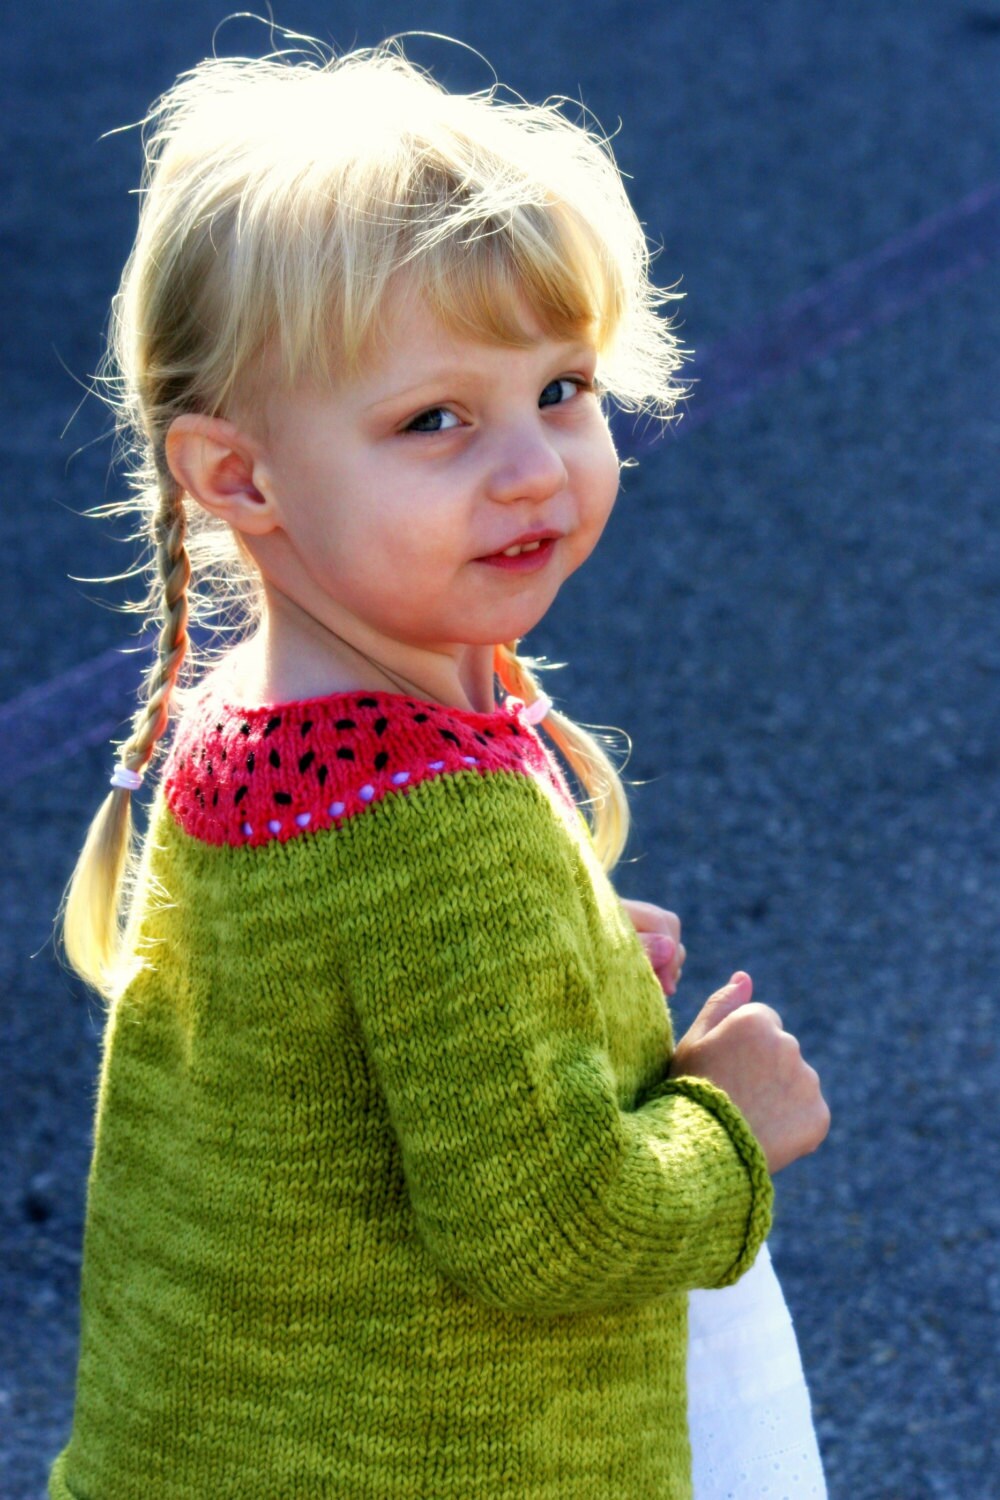 Cute Child's Sweater Knitting Pattern • Watermelon Knitting Pattern PDF • Intermediate Knit Pattern